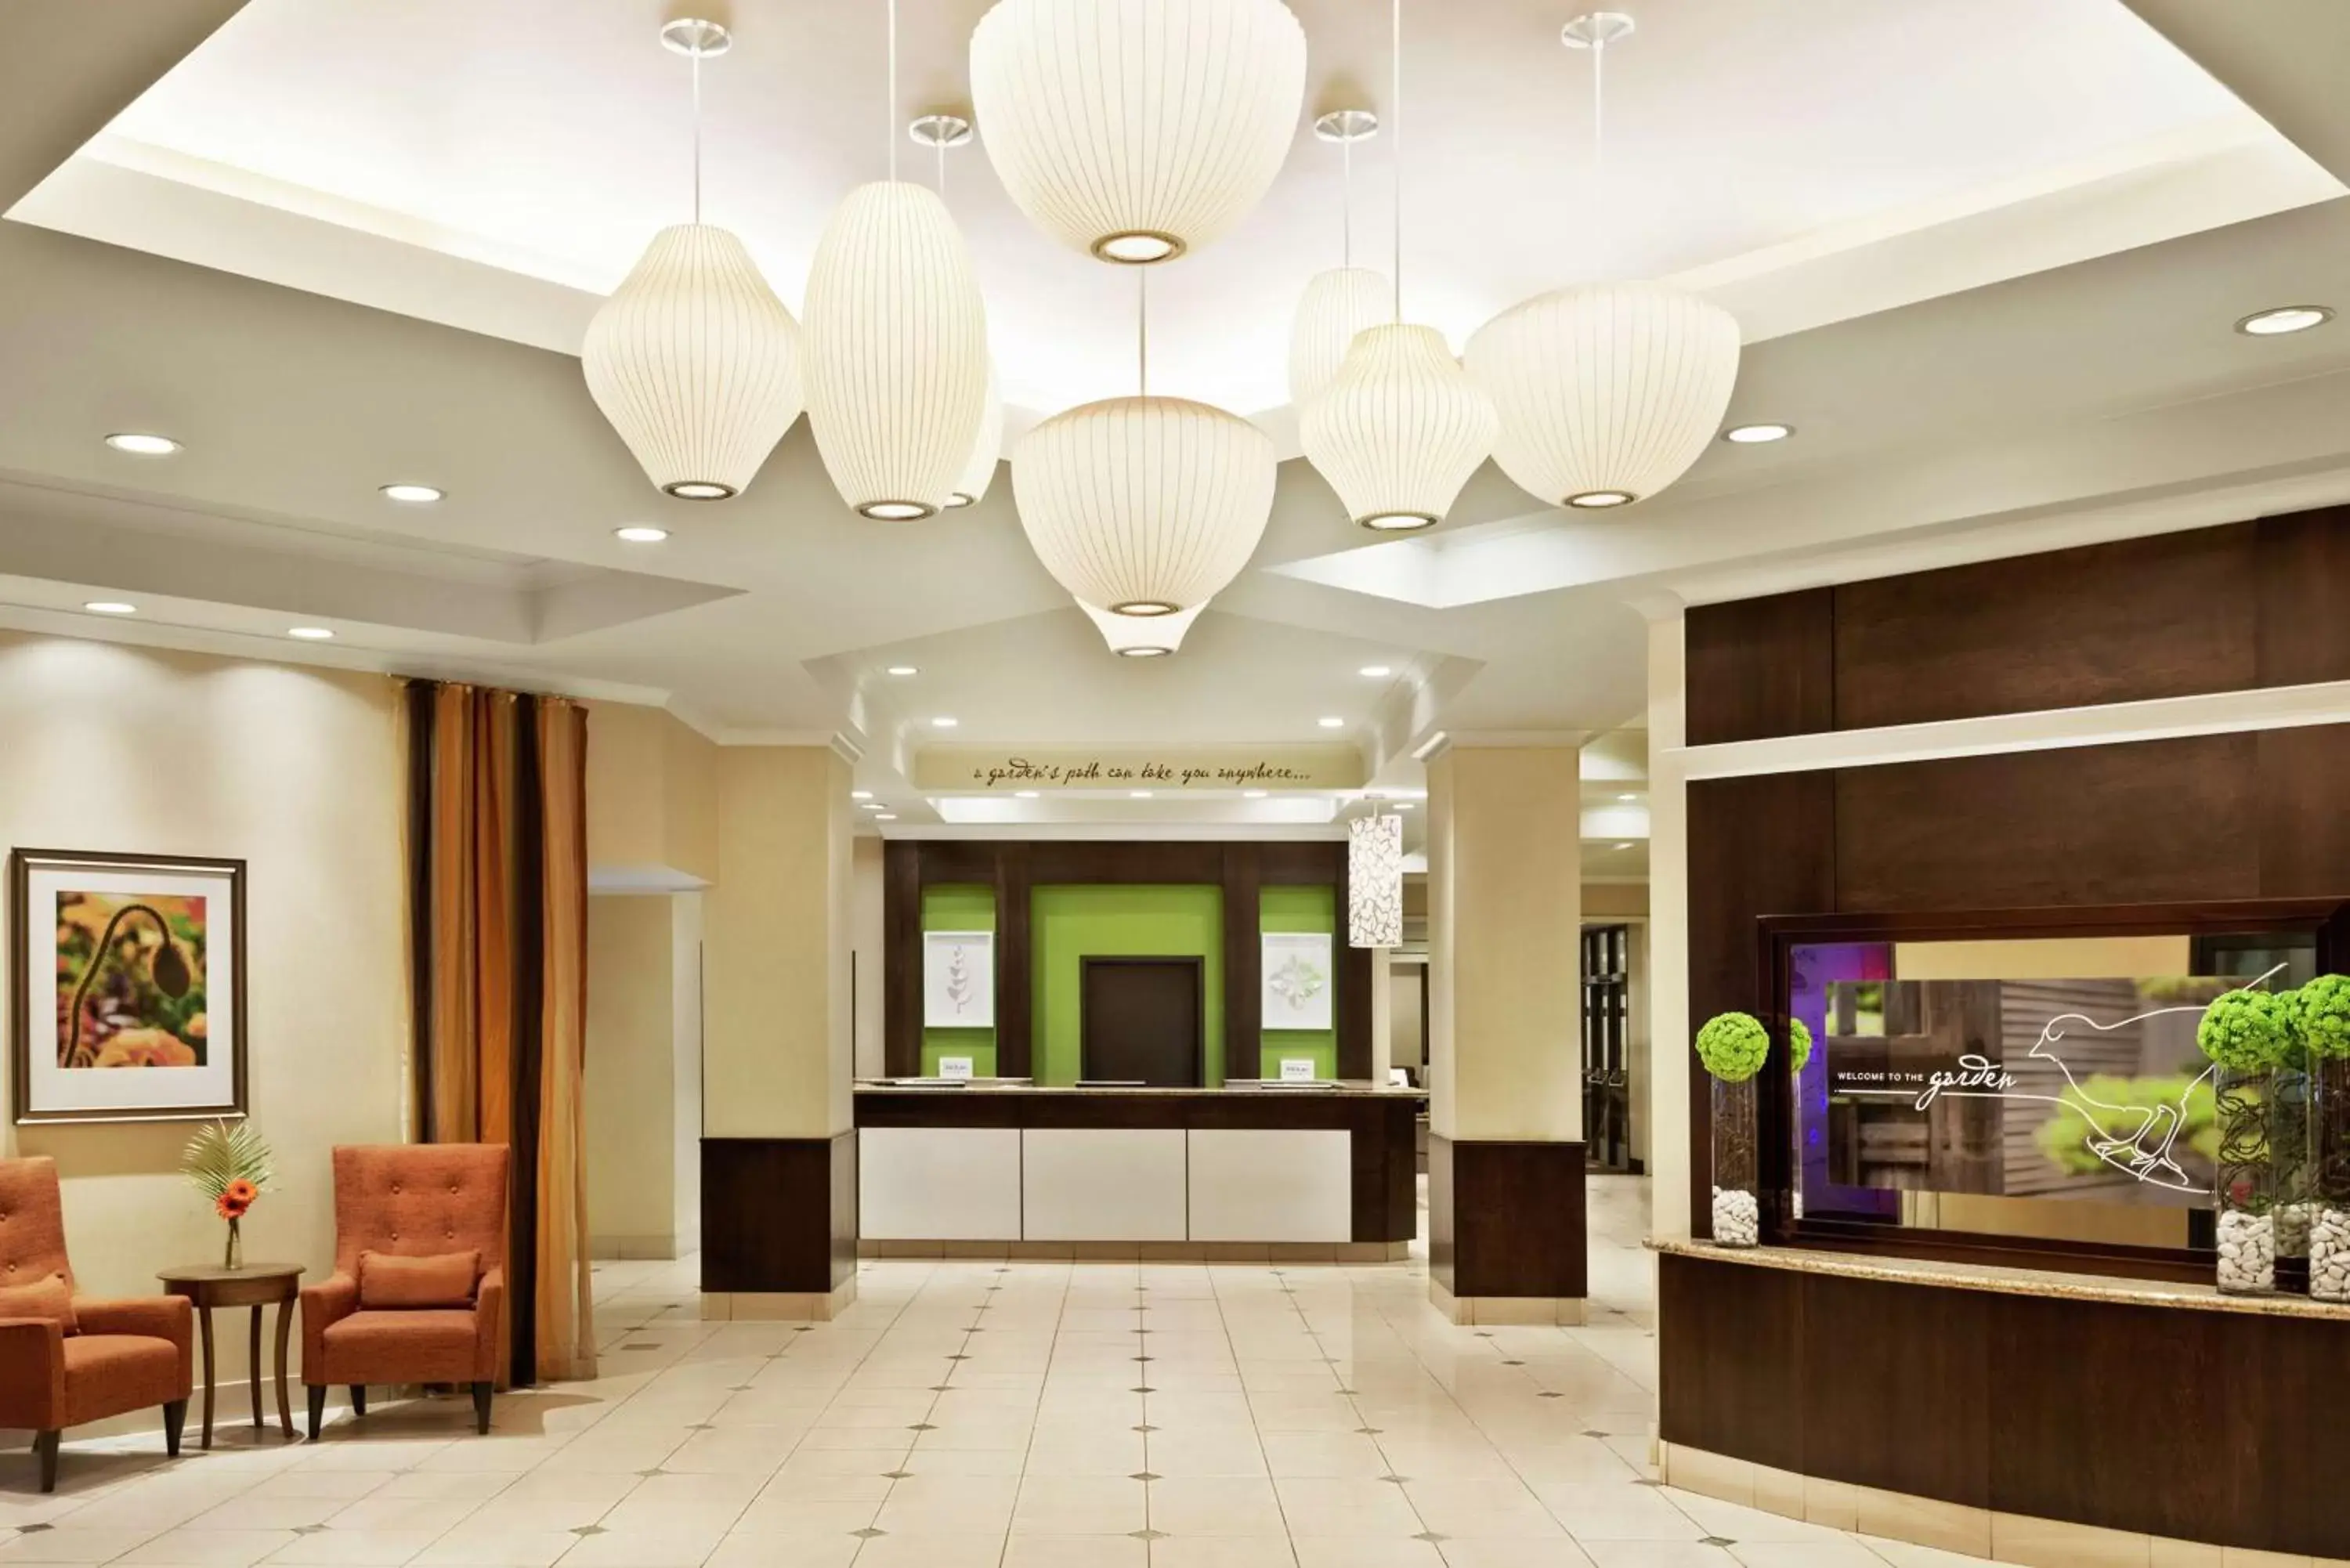 Lobby or reception, Lobby/Reception in Hilton Garden Inn Saskatoon Downtown